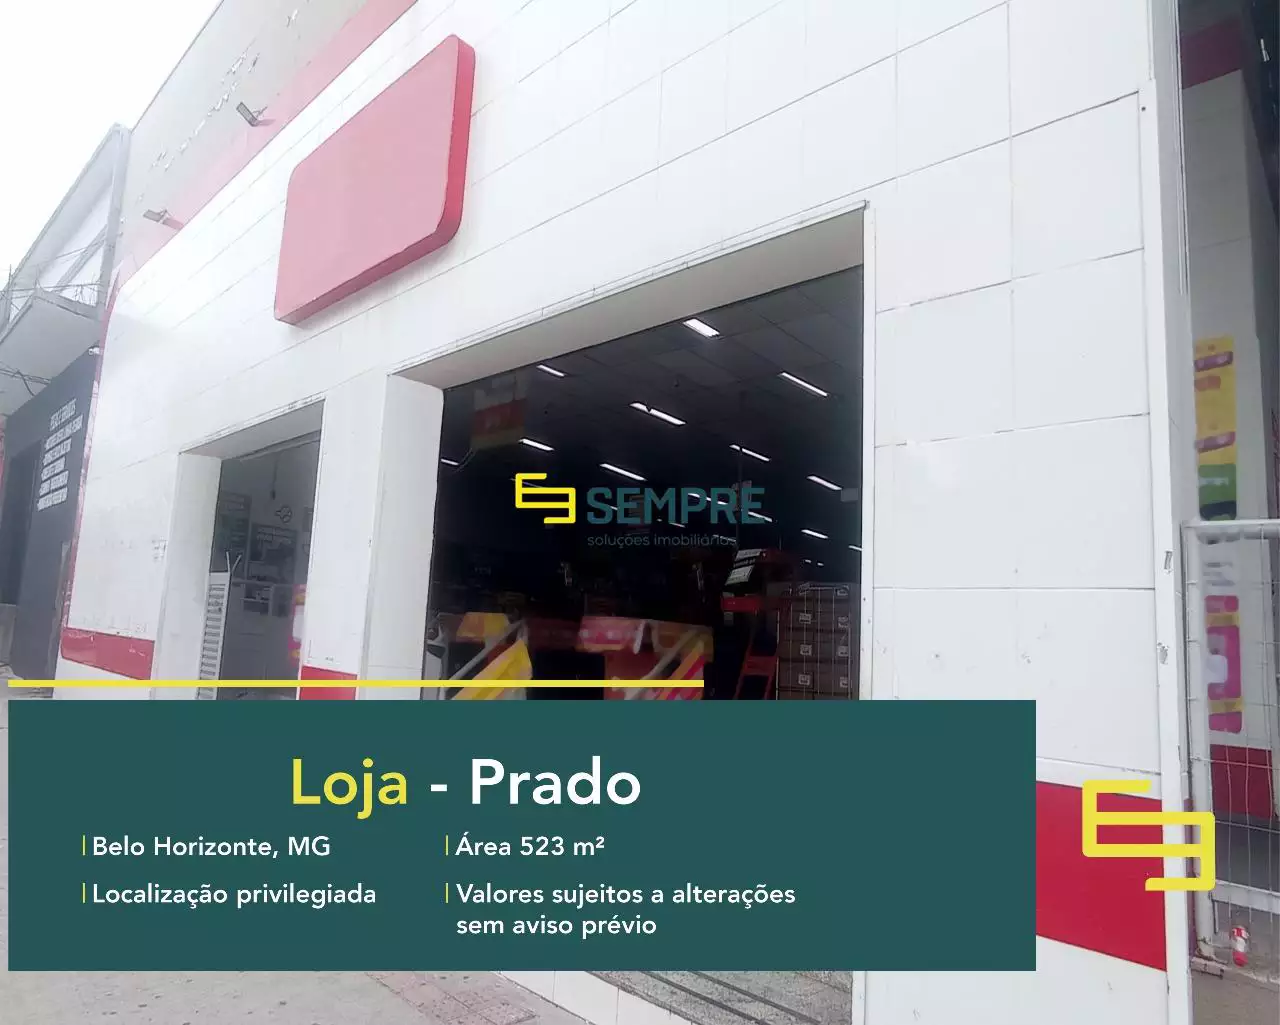 Loja no bairro Prado para alugar - Belo Horizonte, em excelente localização. O estabelecimento comercial conta com área de 933,86 m².